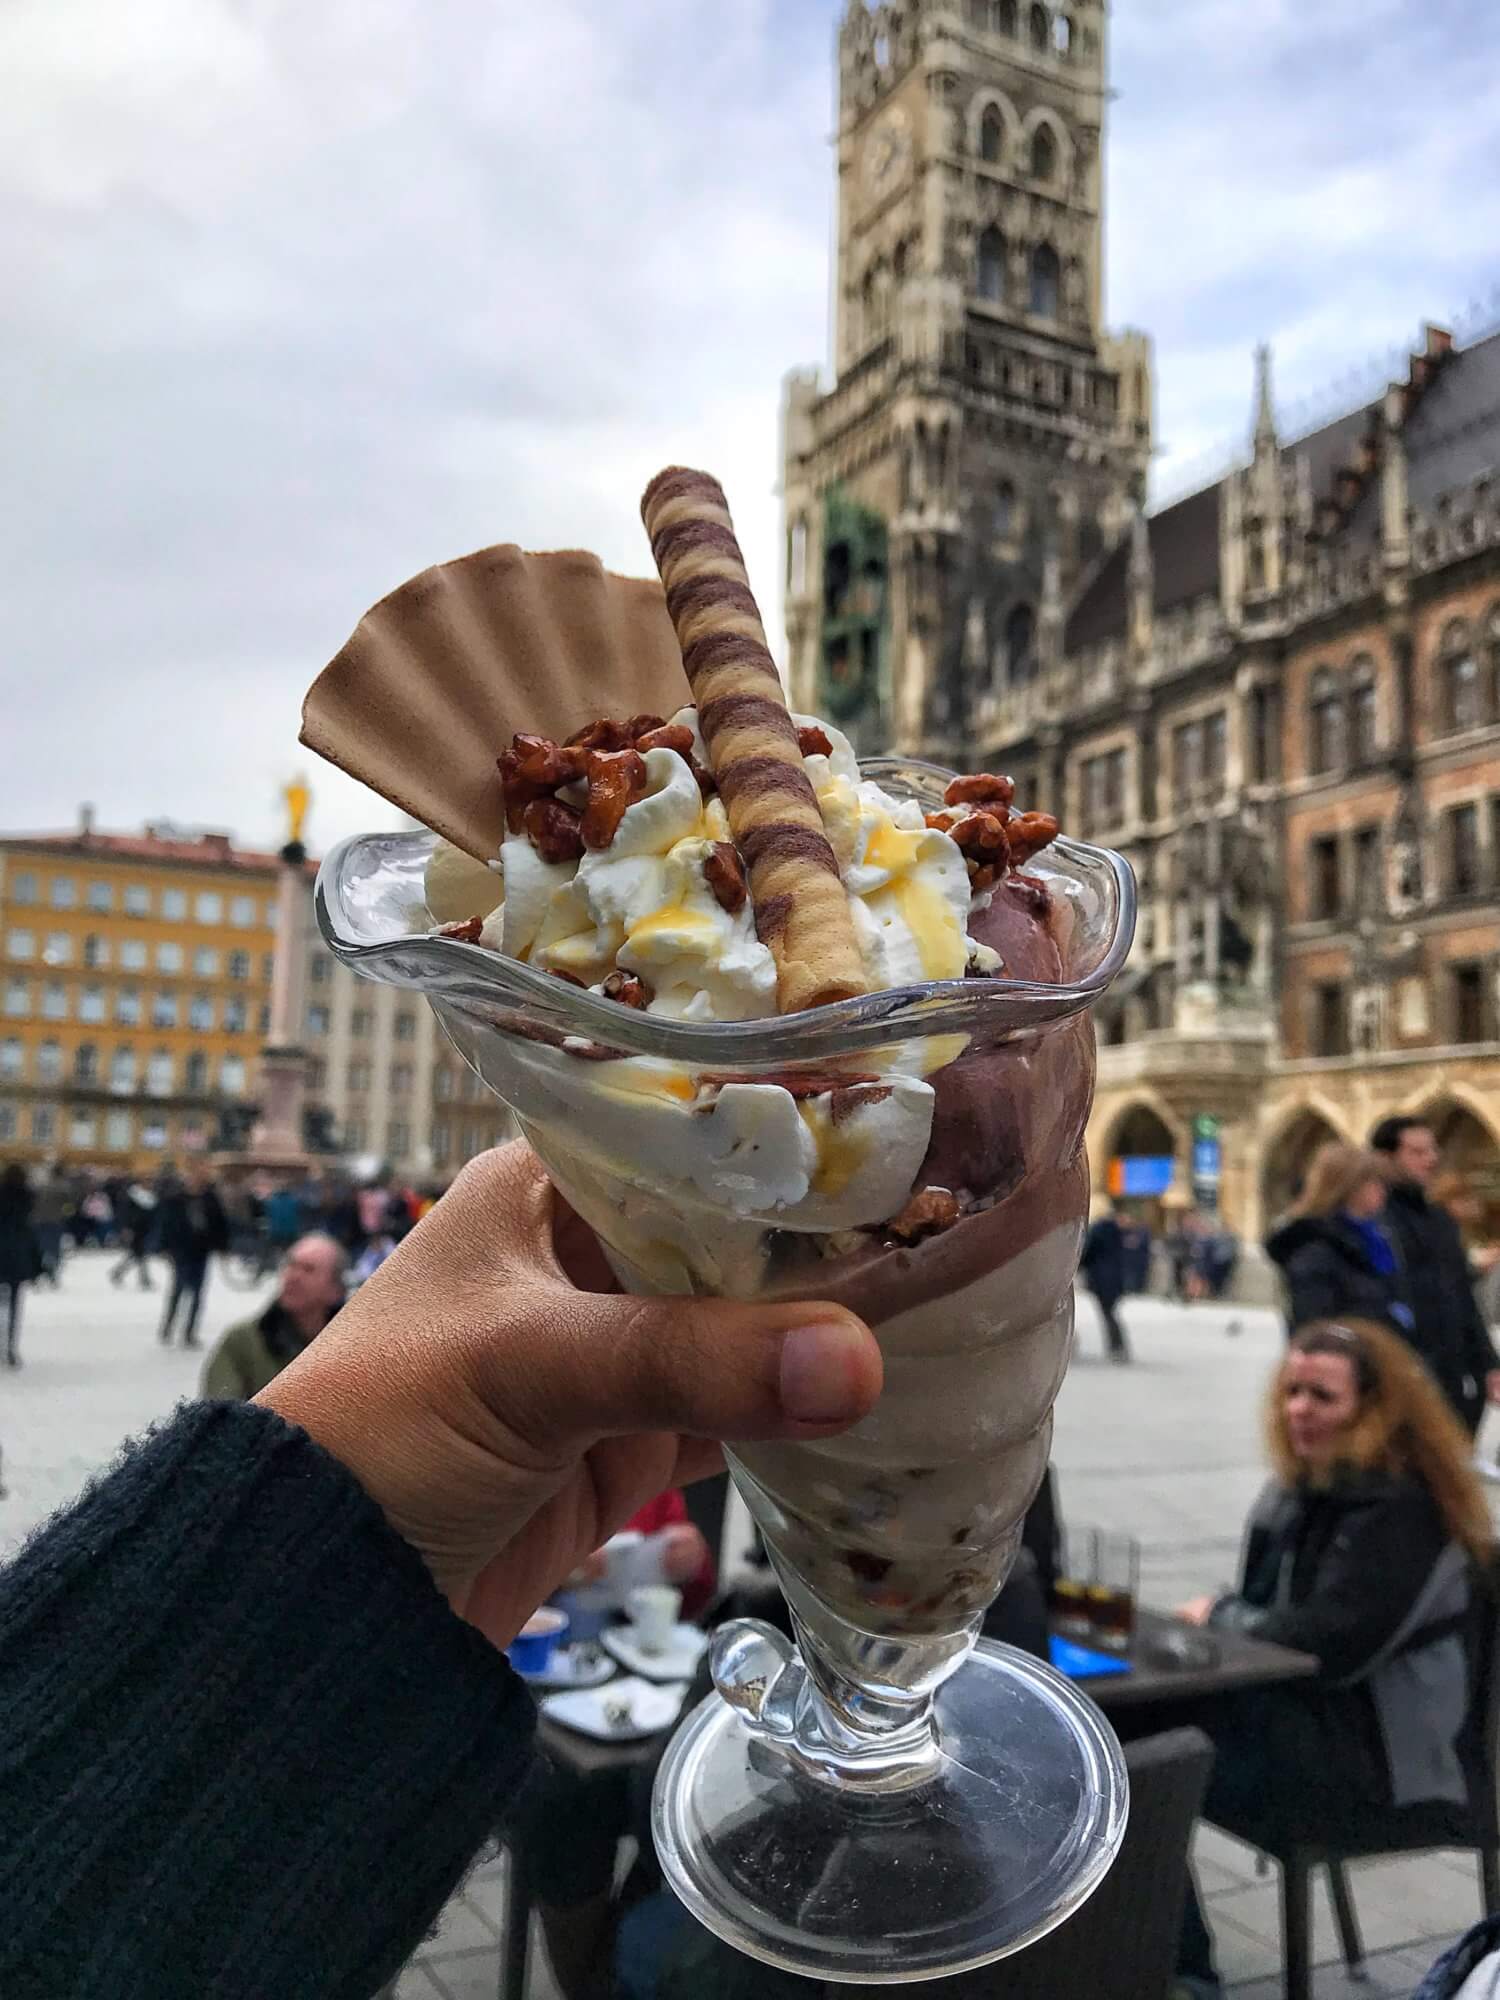 Rischart ice cream in Marienplatz, Munich